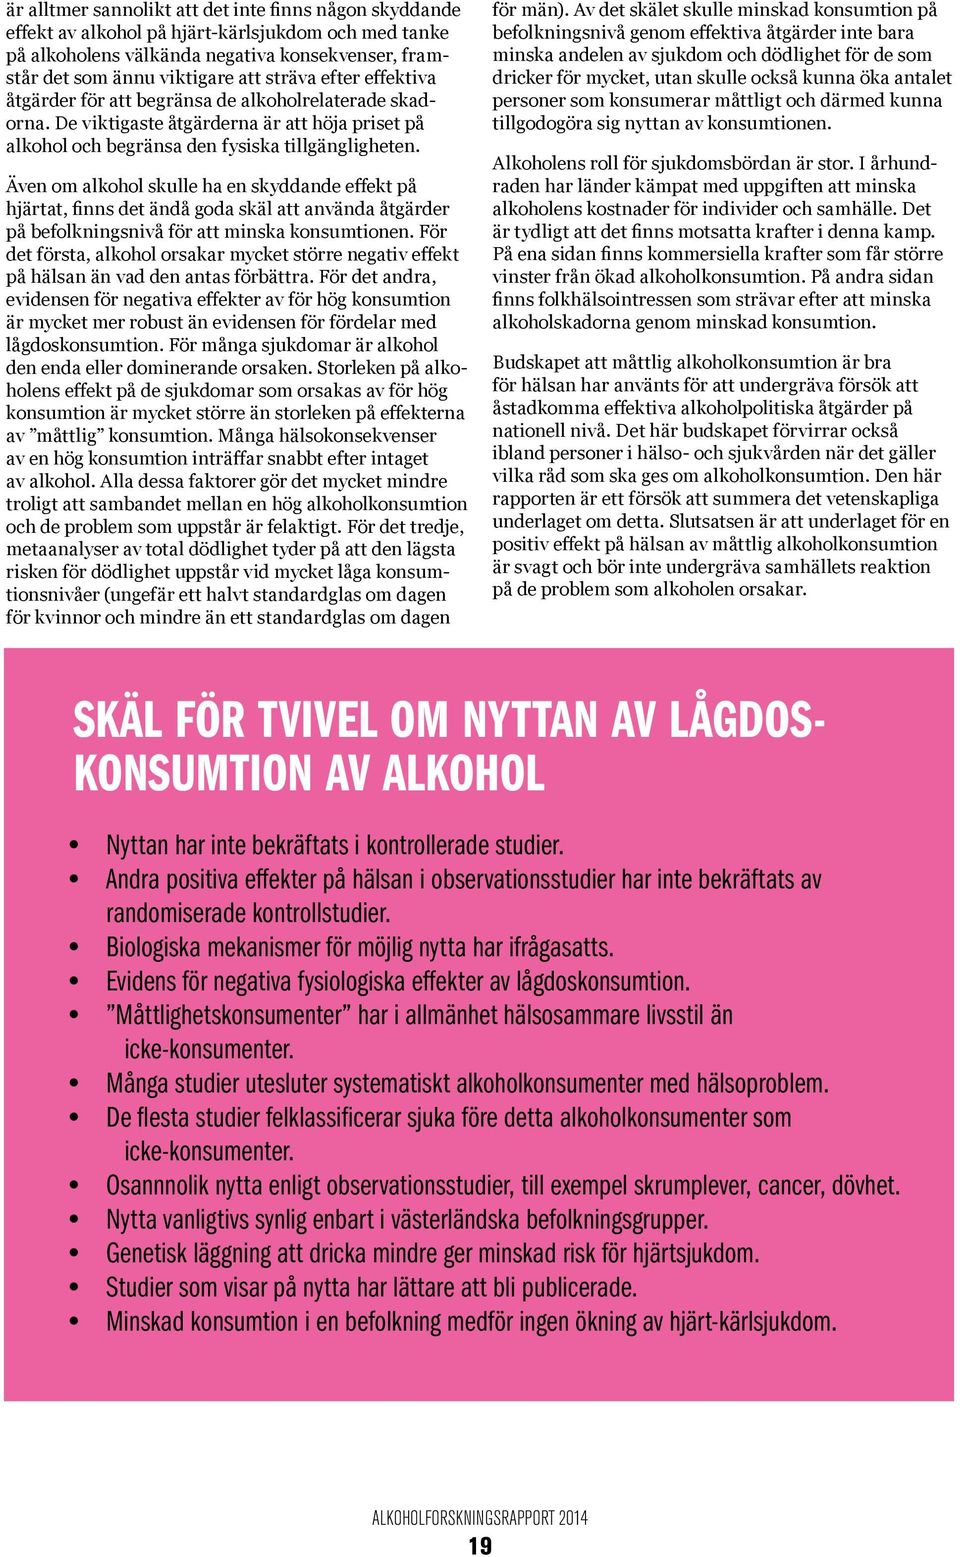 Även om alkohol skulle ha en skyddande effekt på hjärtat, finns det ändå goda skäl att använda åtgärder på befolkningsnivå för att minska konsumtionen.